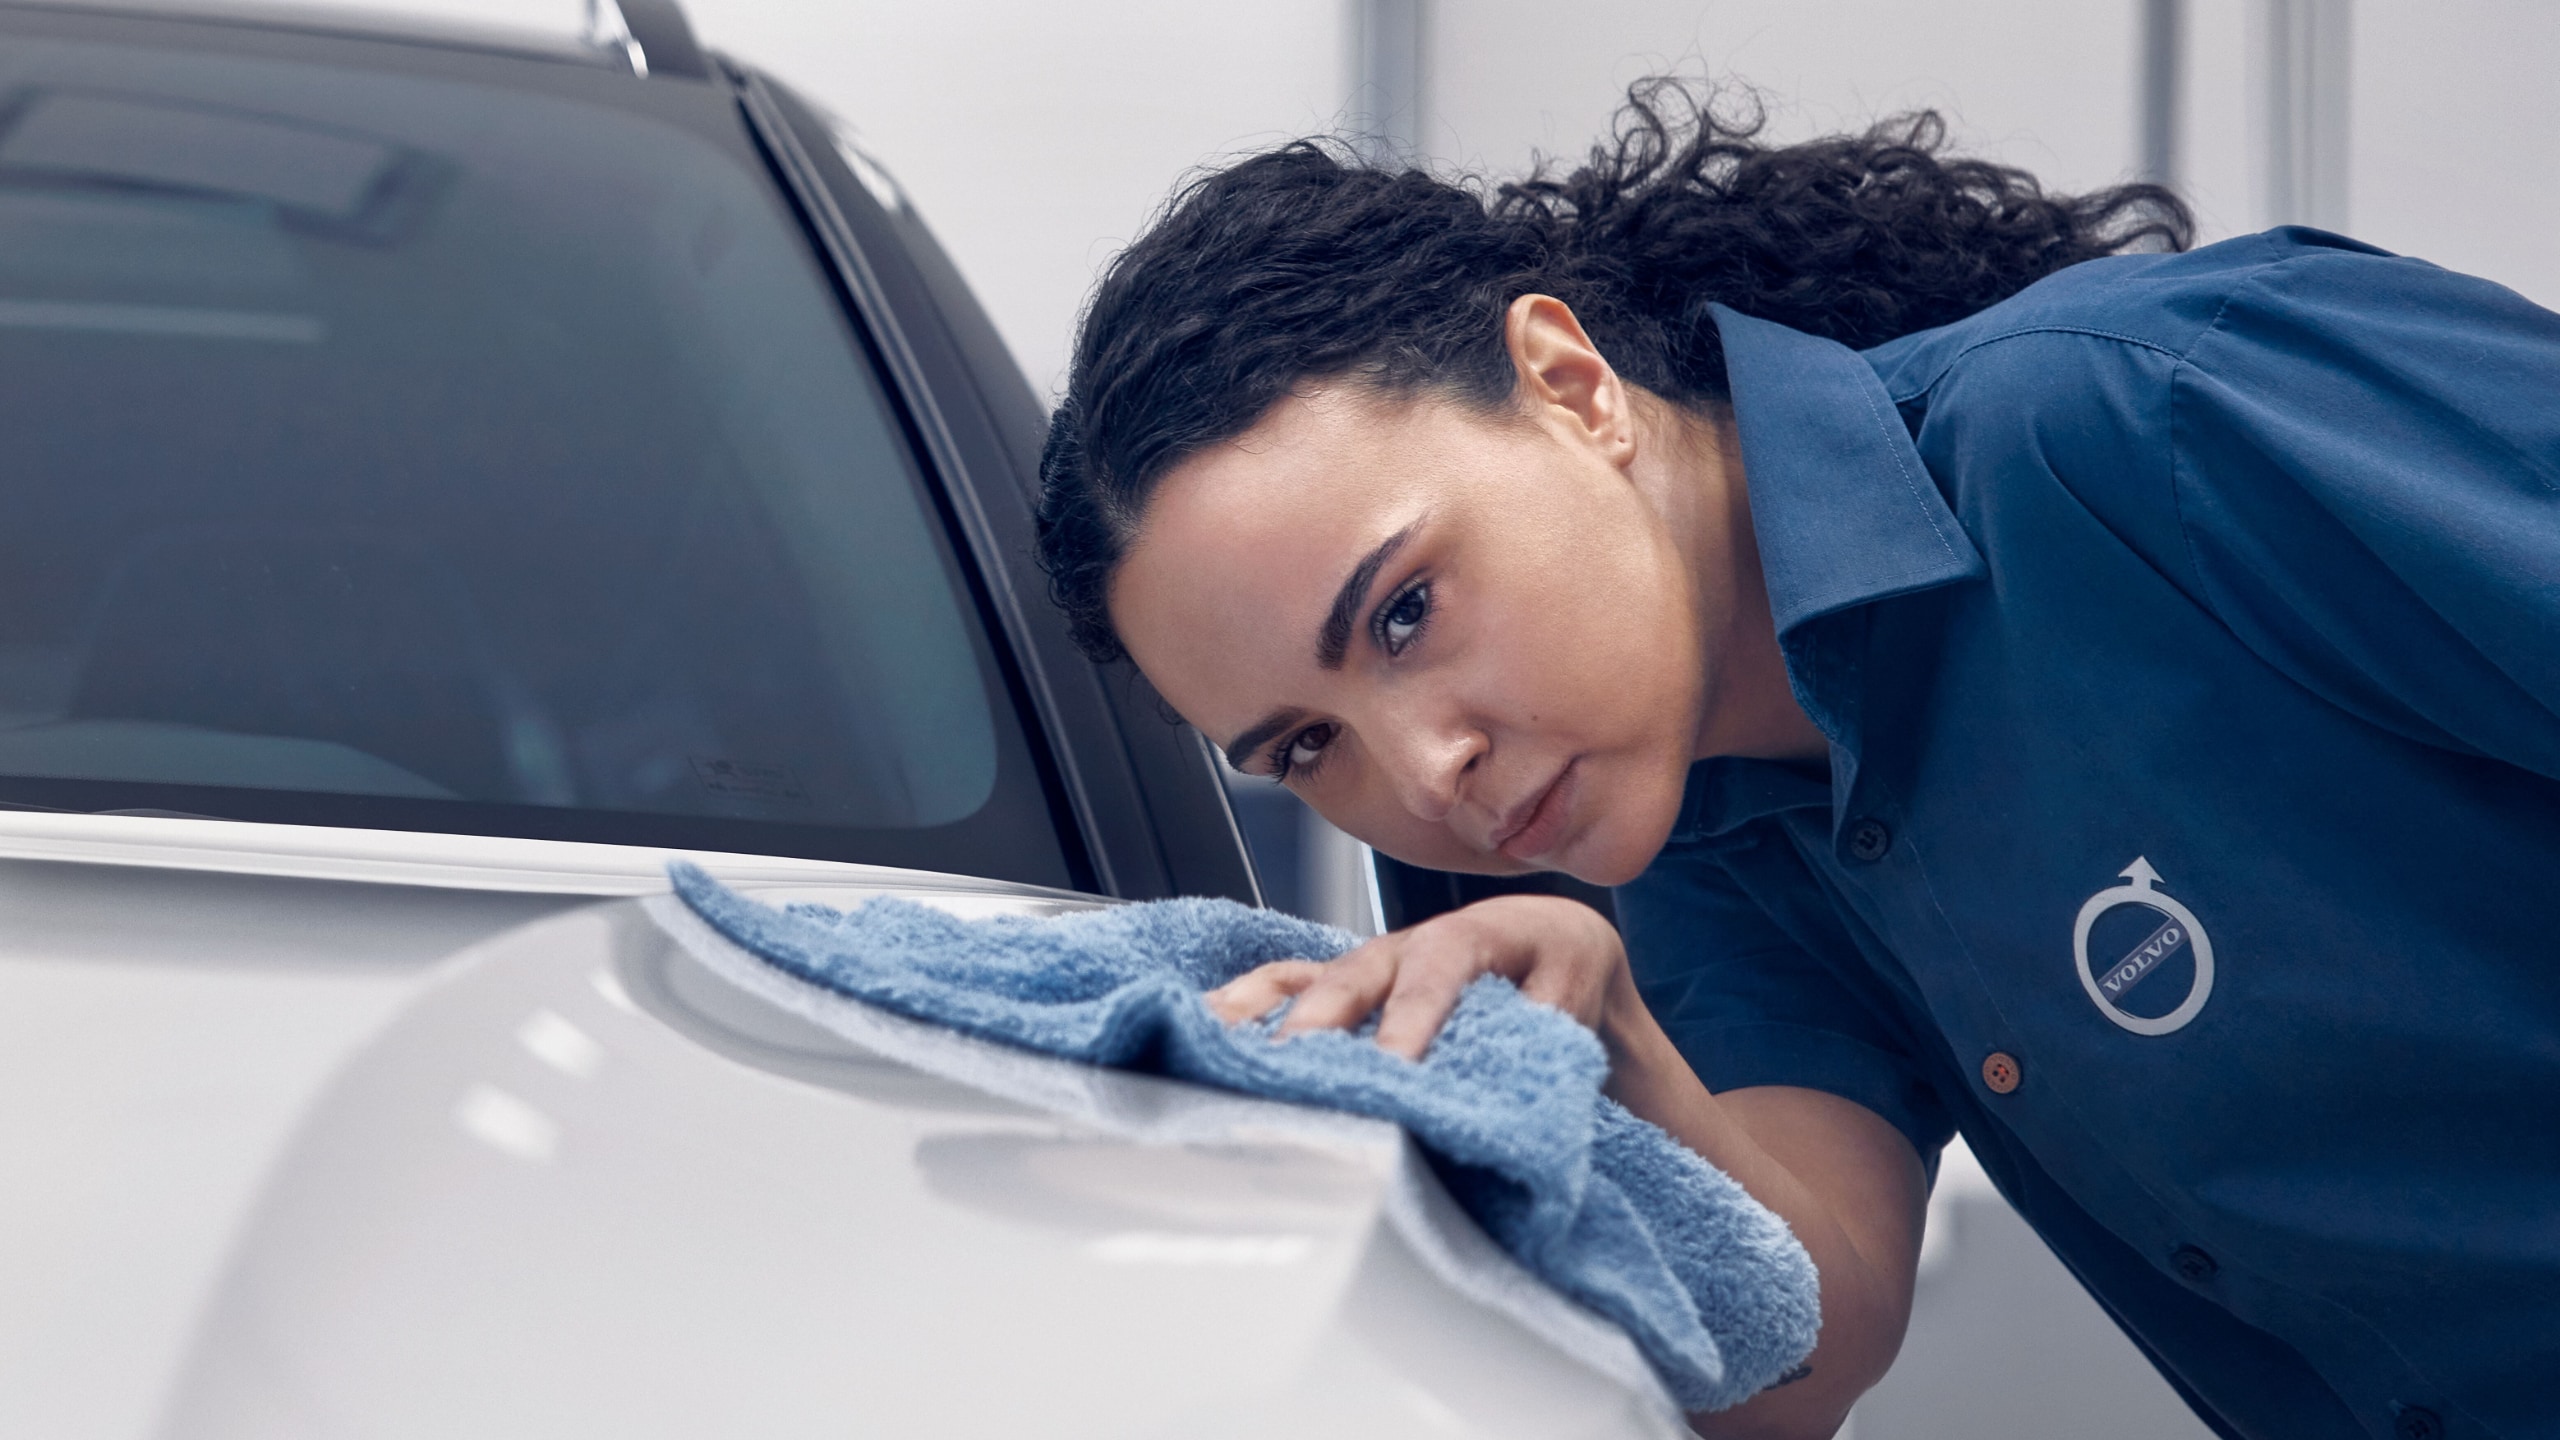 Eine Frau im blauen Volvo Poloshirt geht mit einem blauen Tuch über den weißen lack eines Volvo Fahrzeuges.